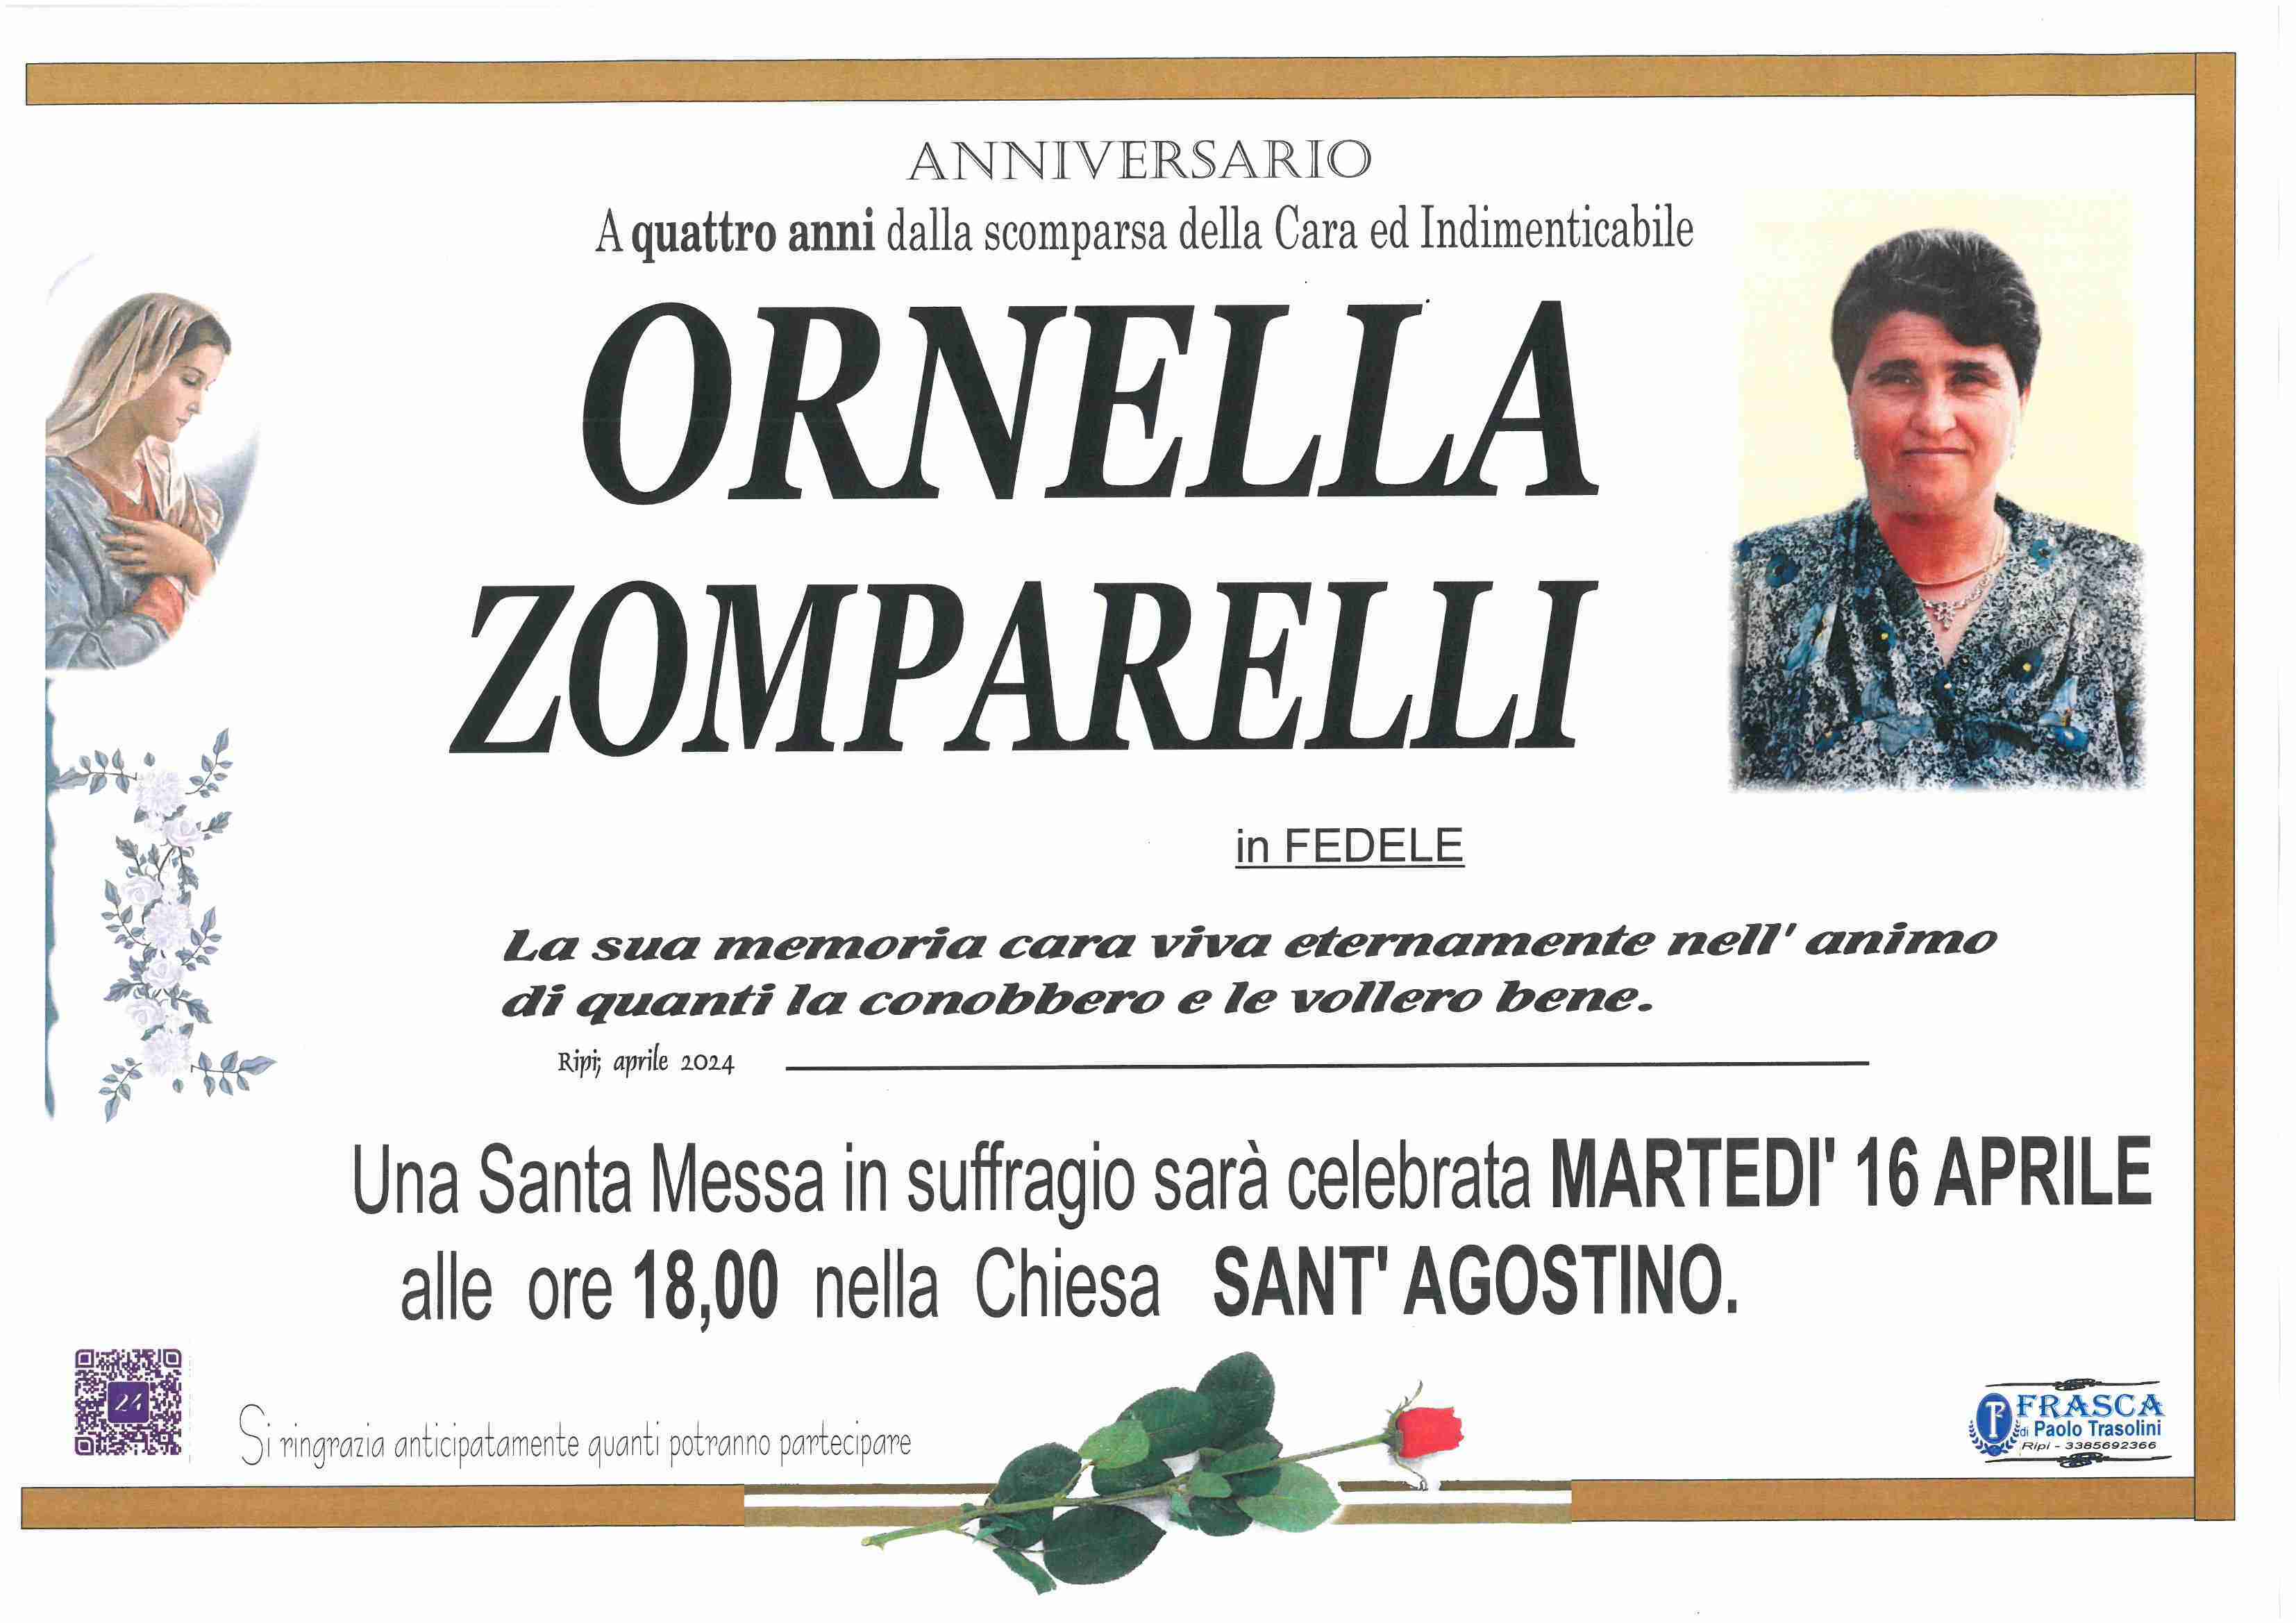 Ornella Zomparelli